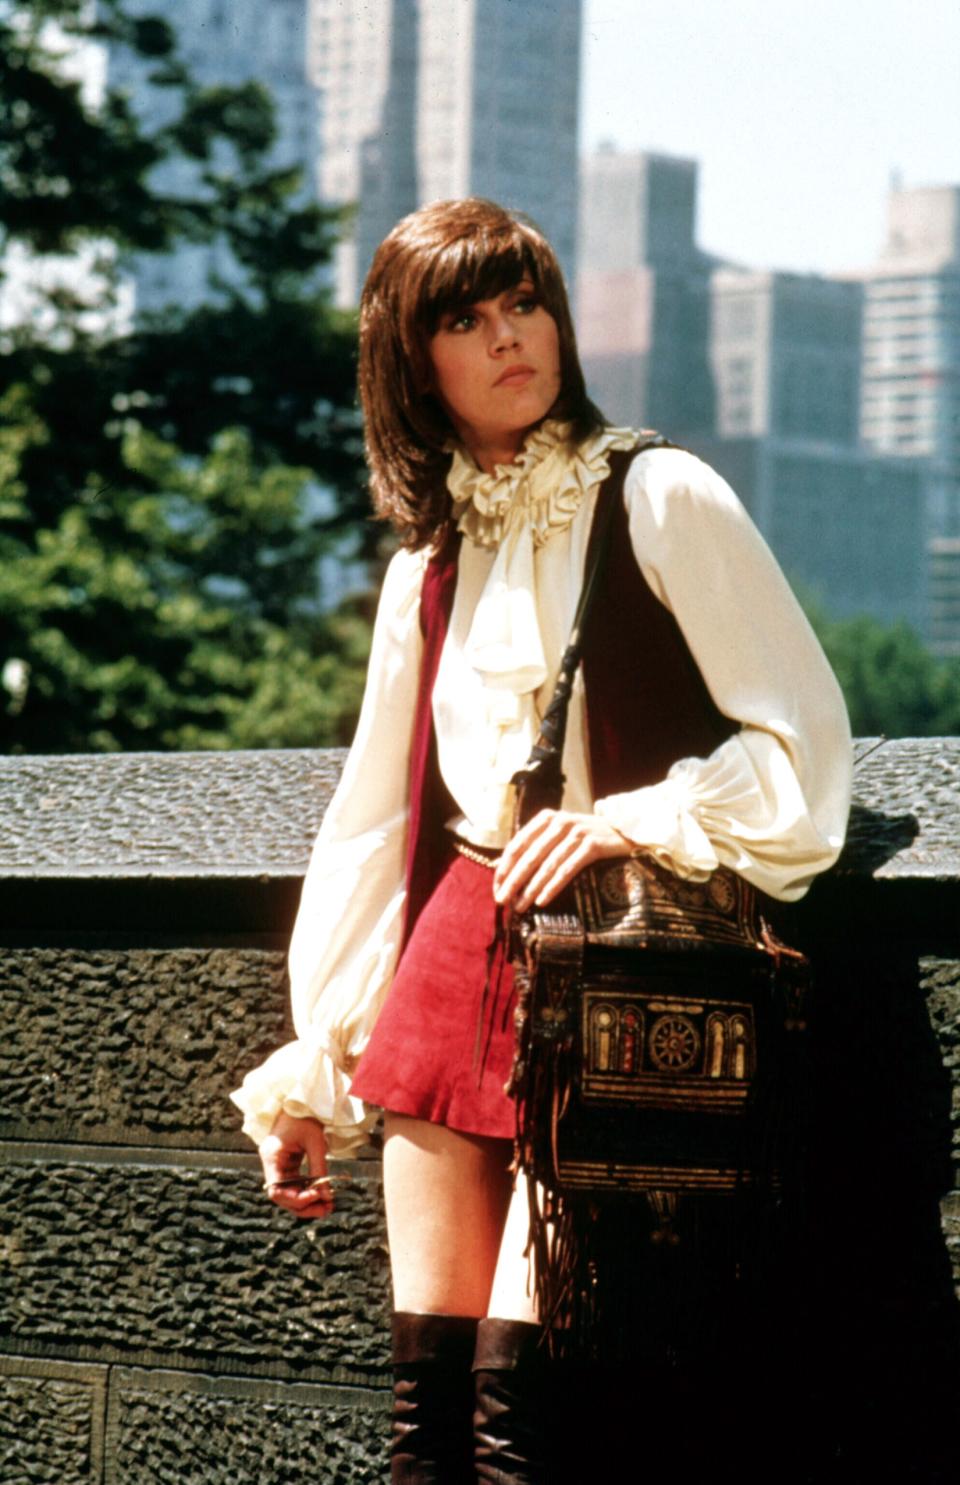 Jane Fonda in Klute, 1971